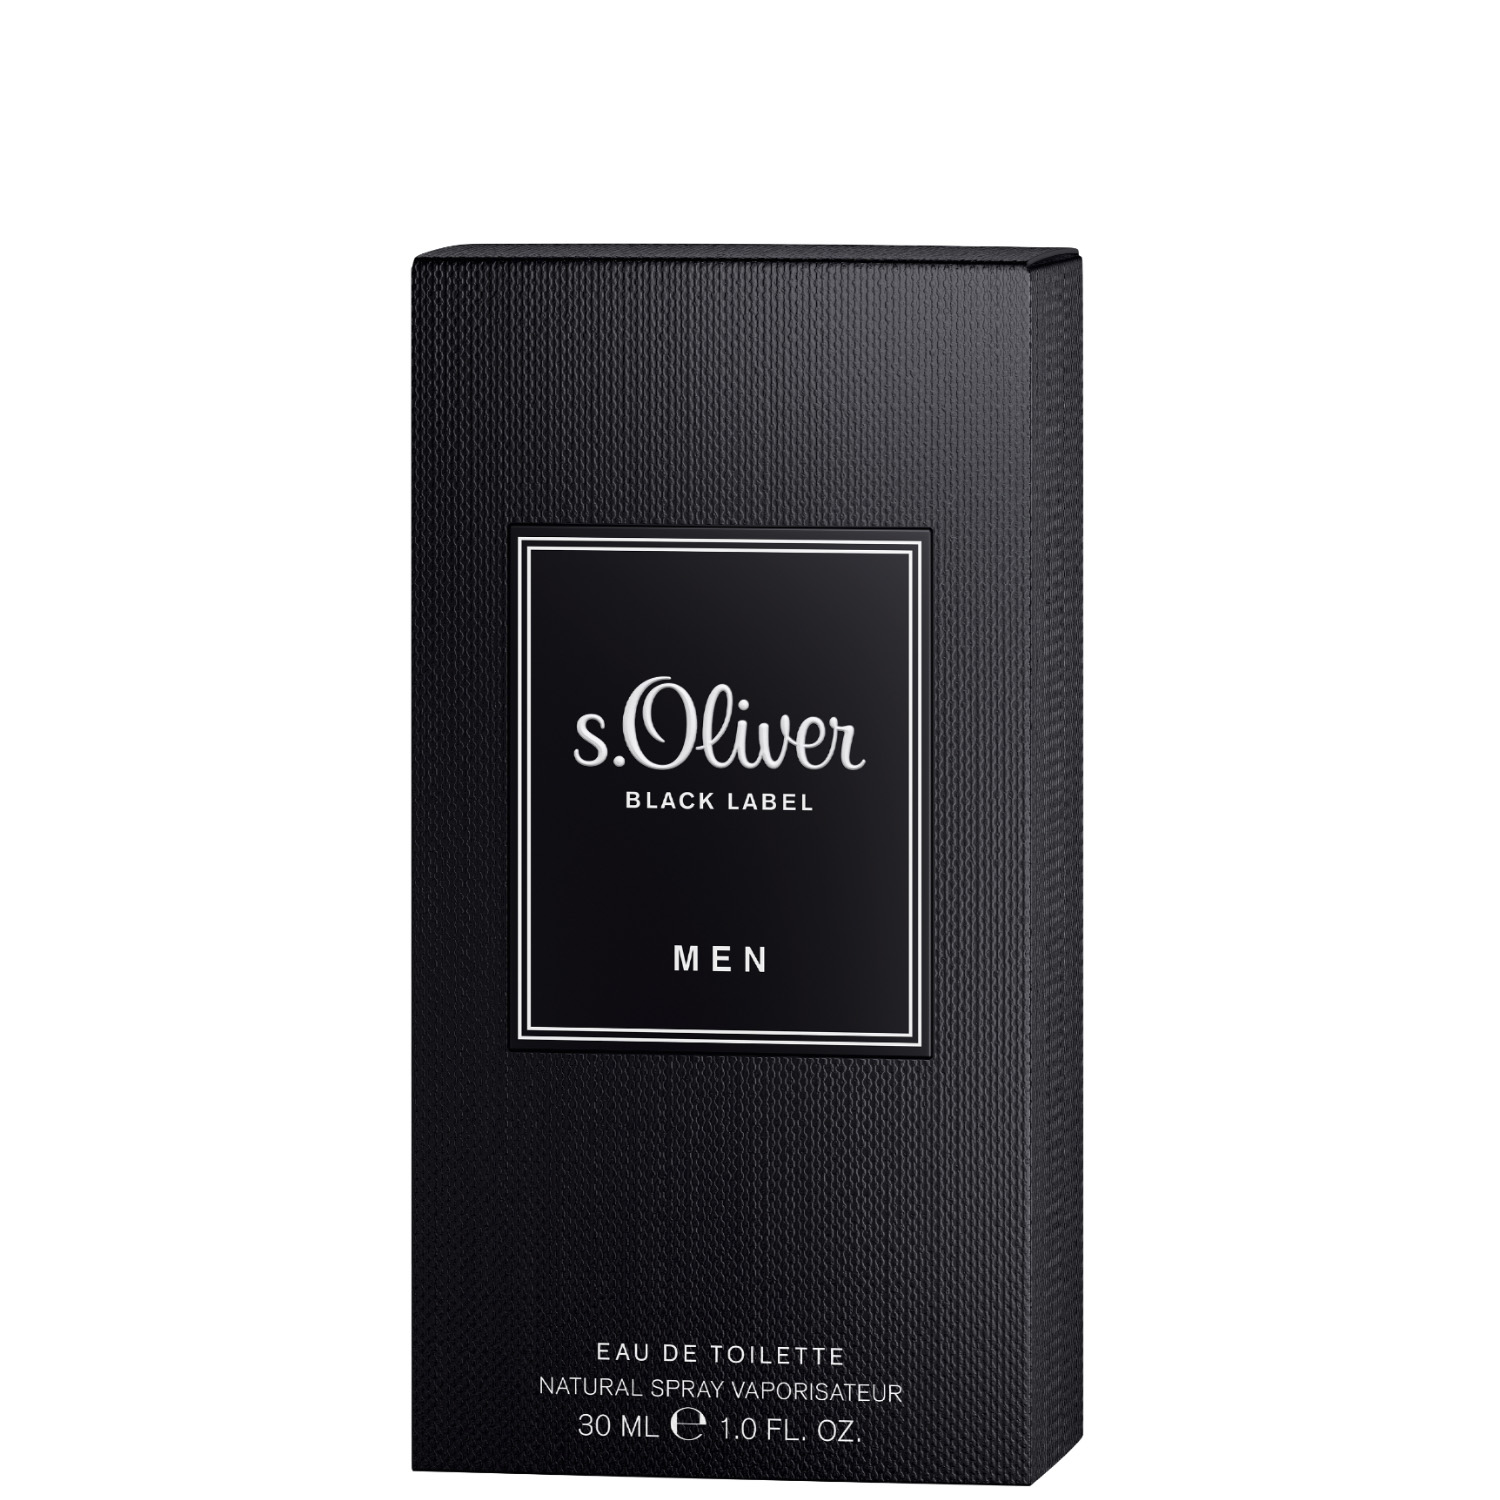 S.Oliver Black Label Men Eau de Toilette 30ml